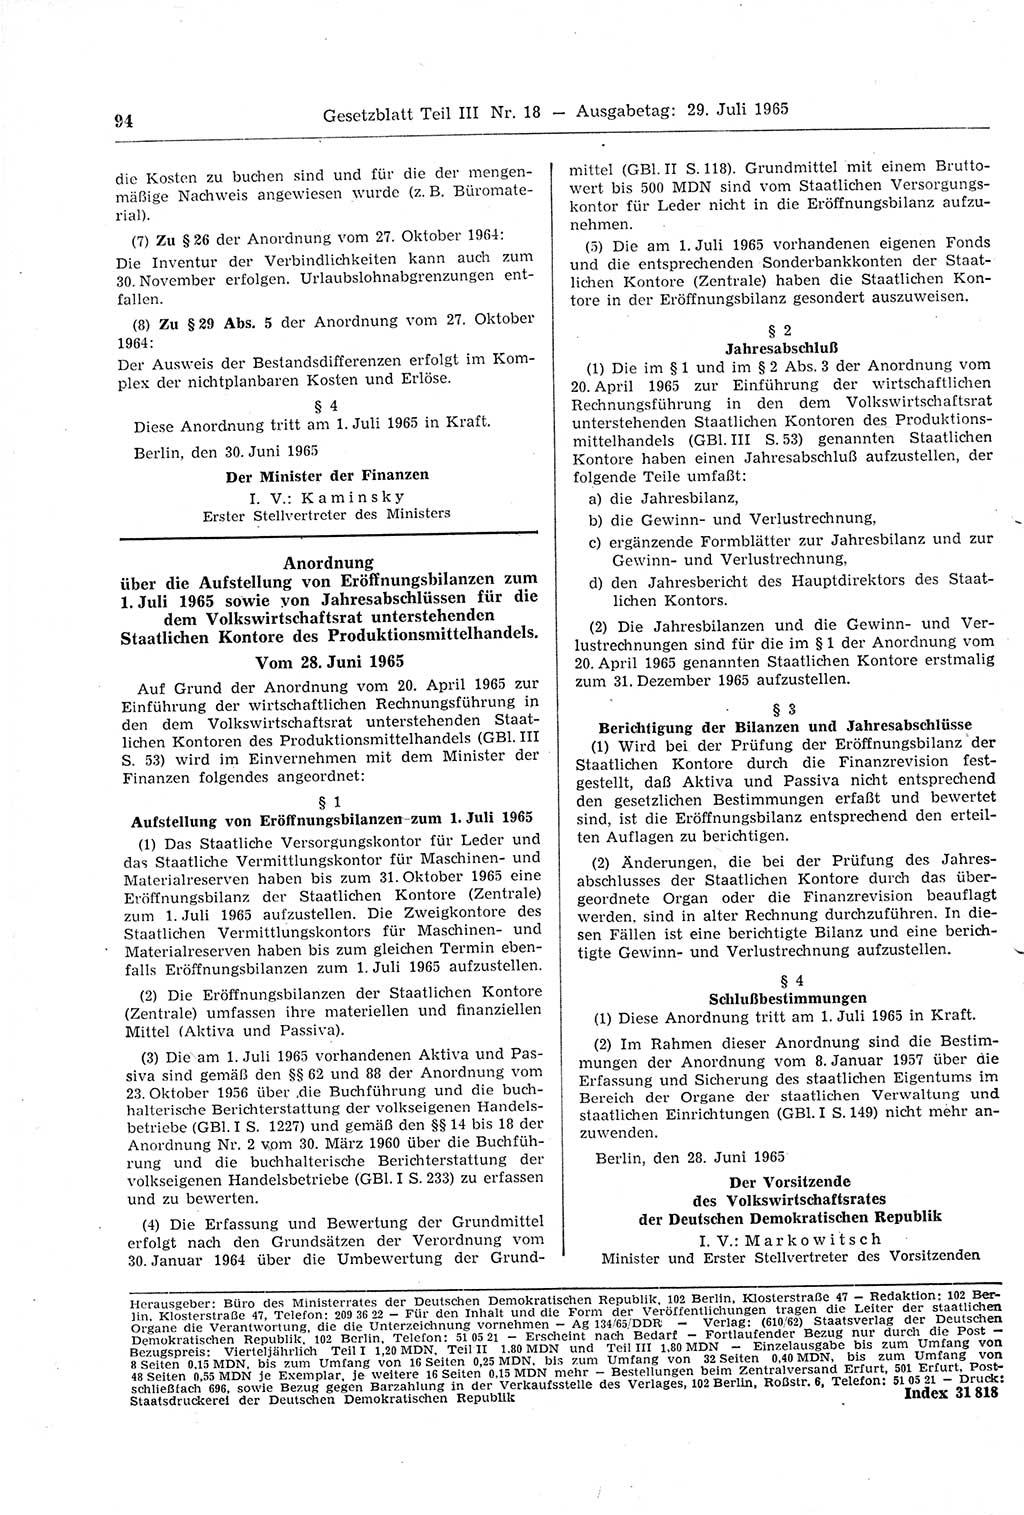 Gesetzblatt (GBl.) der Deutschen Demokratischen Republik (DDR) Teil ⅠⅠⅠ 1965, Seite 94 (GBl. DDR ⅠⅠⅠ 1965, S. 94)